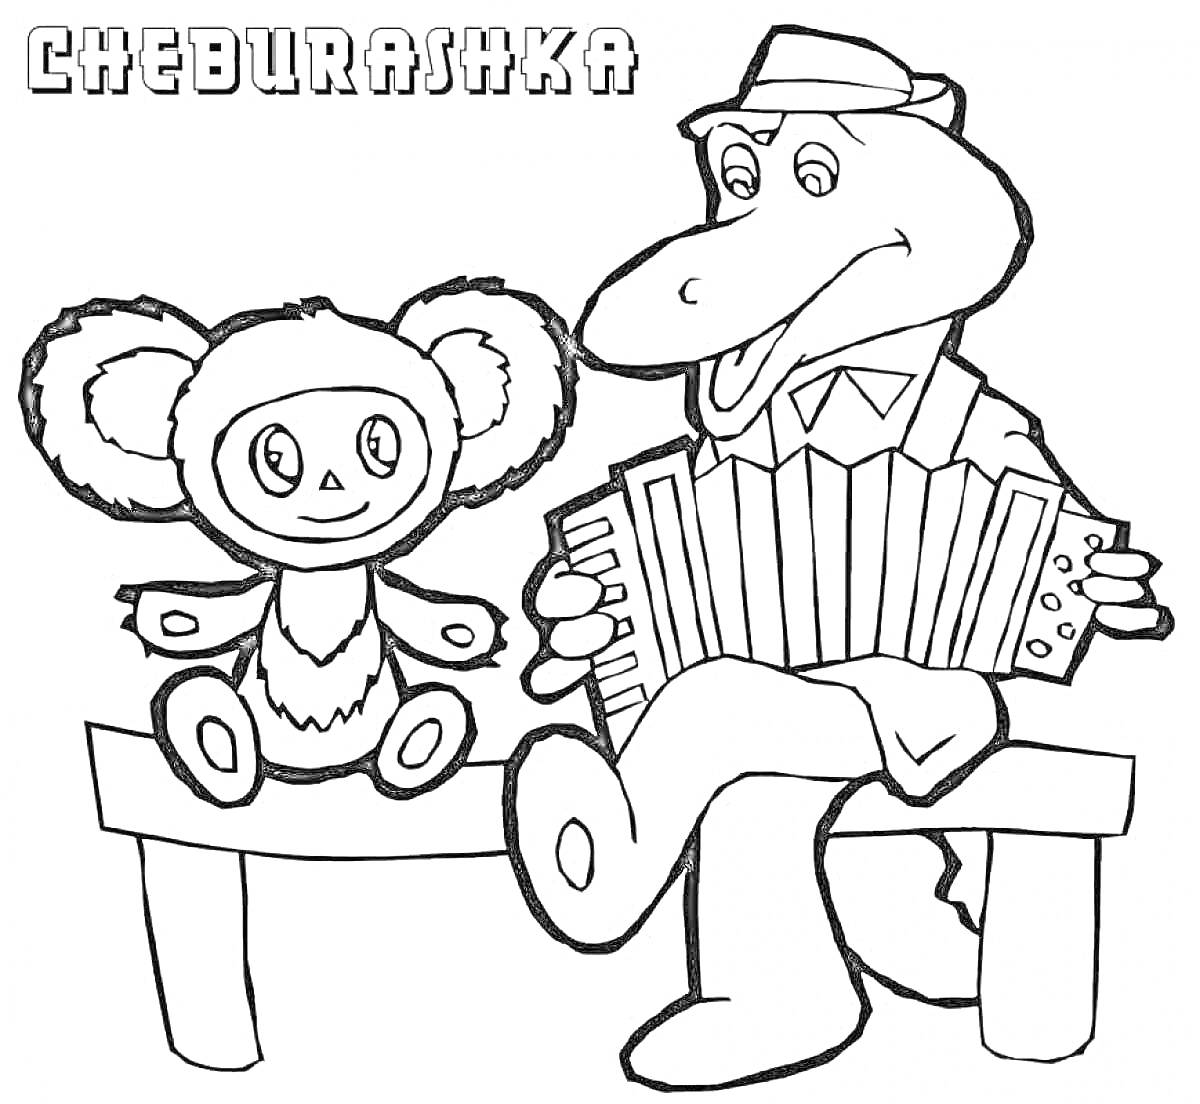 Раскраска Чебурашка и крокодил Гена на скамейке с гармошкой